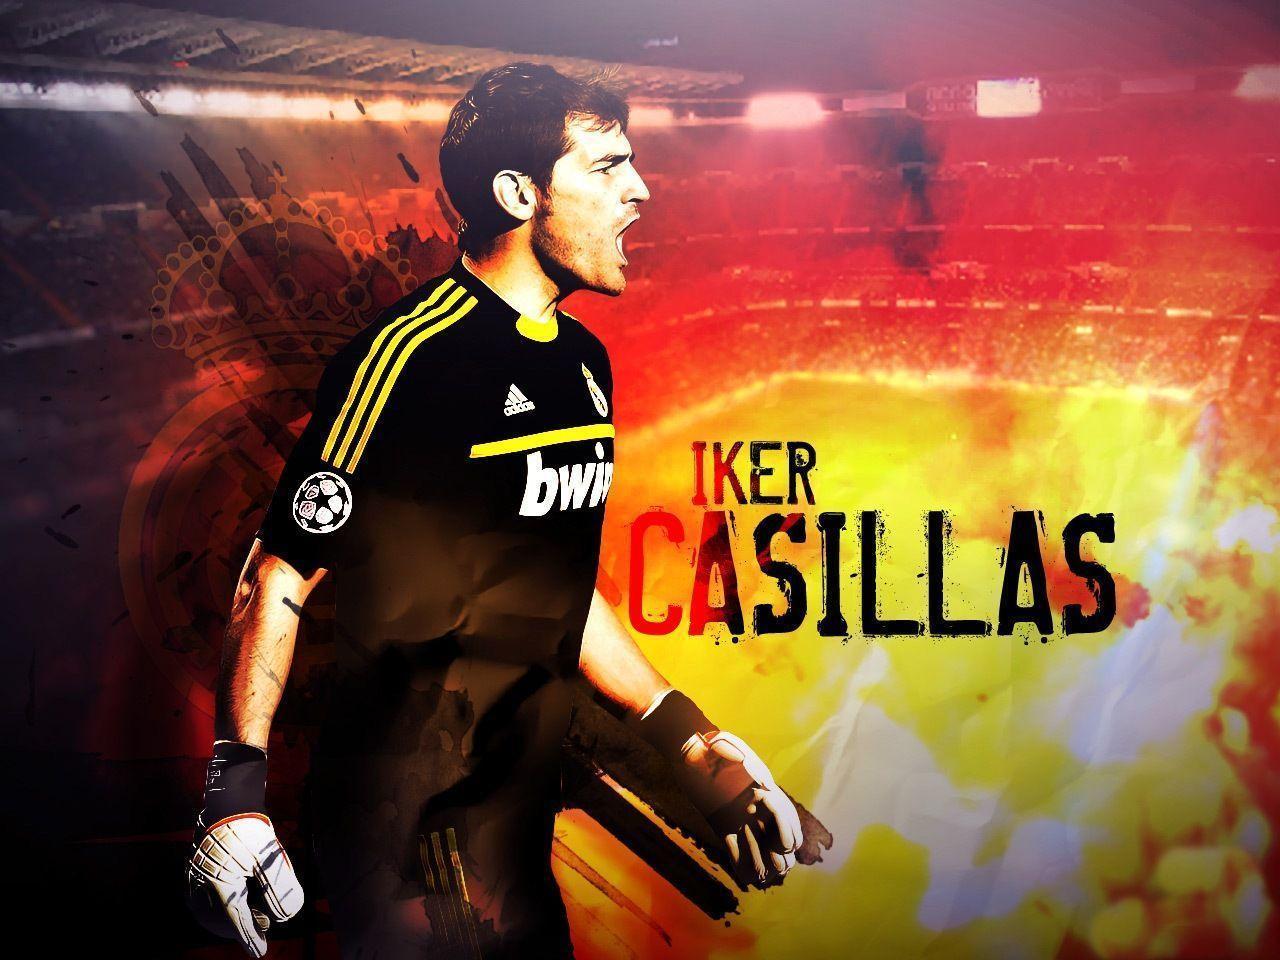 Best Iker Casillas Wallpaper 04. hdwallpaper